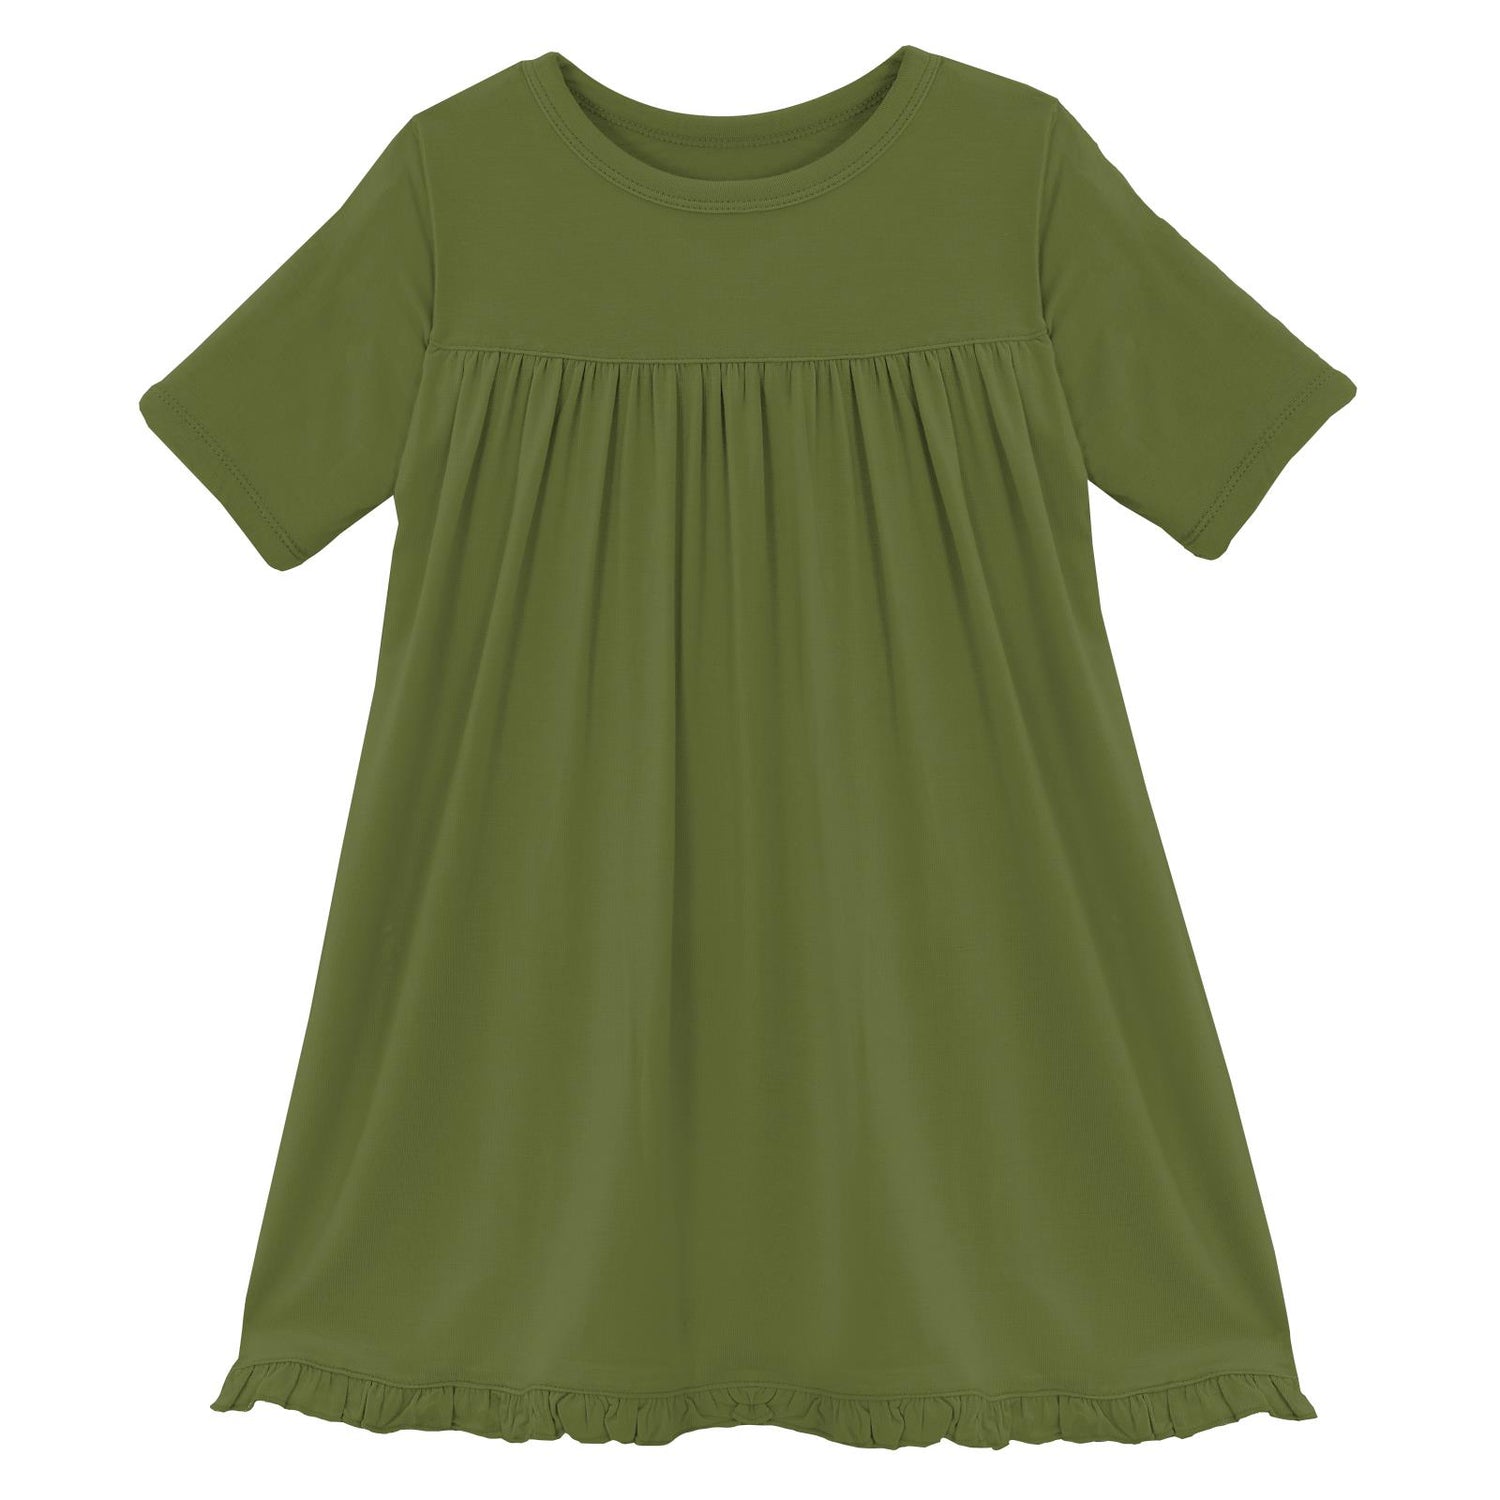 Classic Short Sleeve Swing Dress in Moss